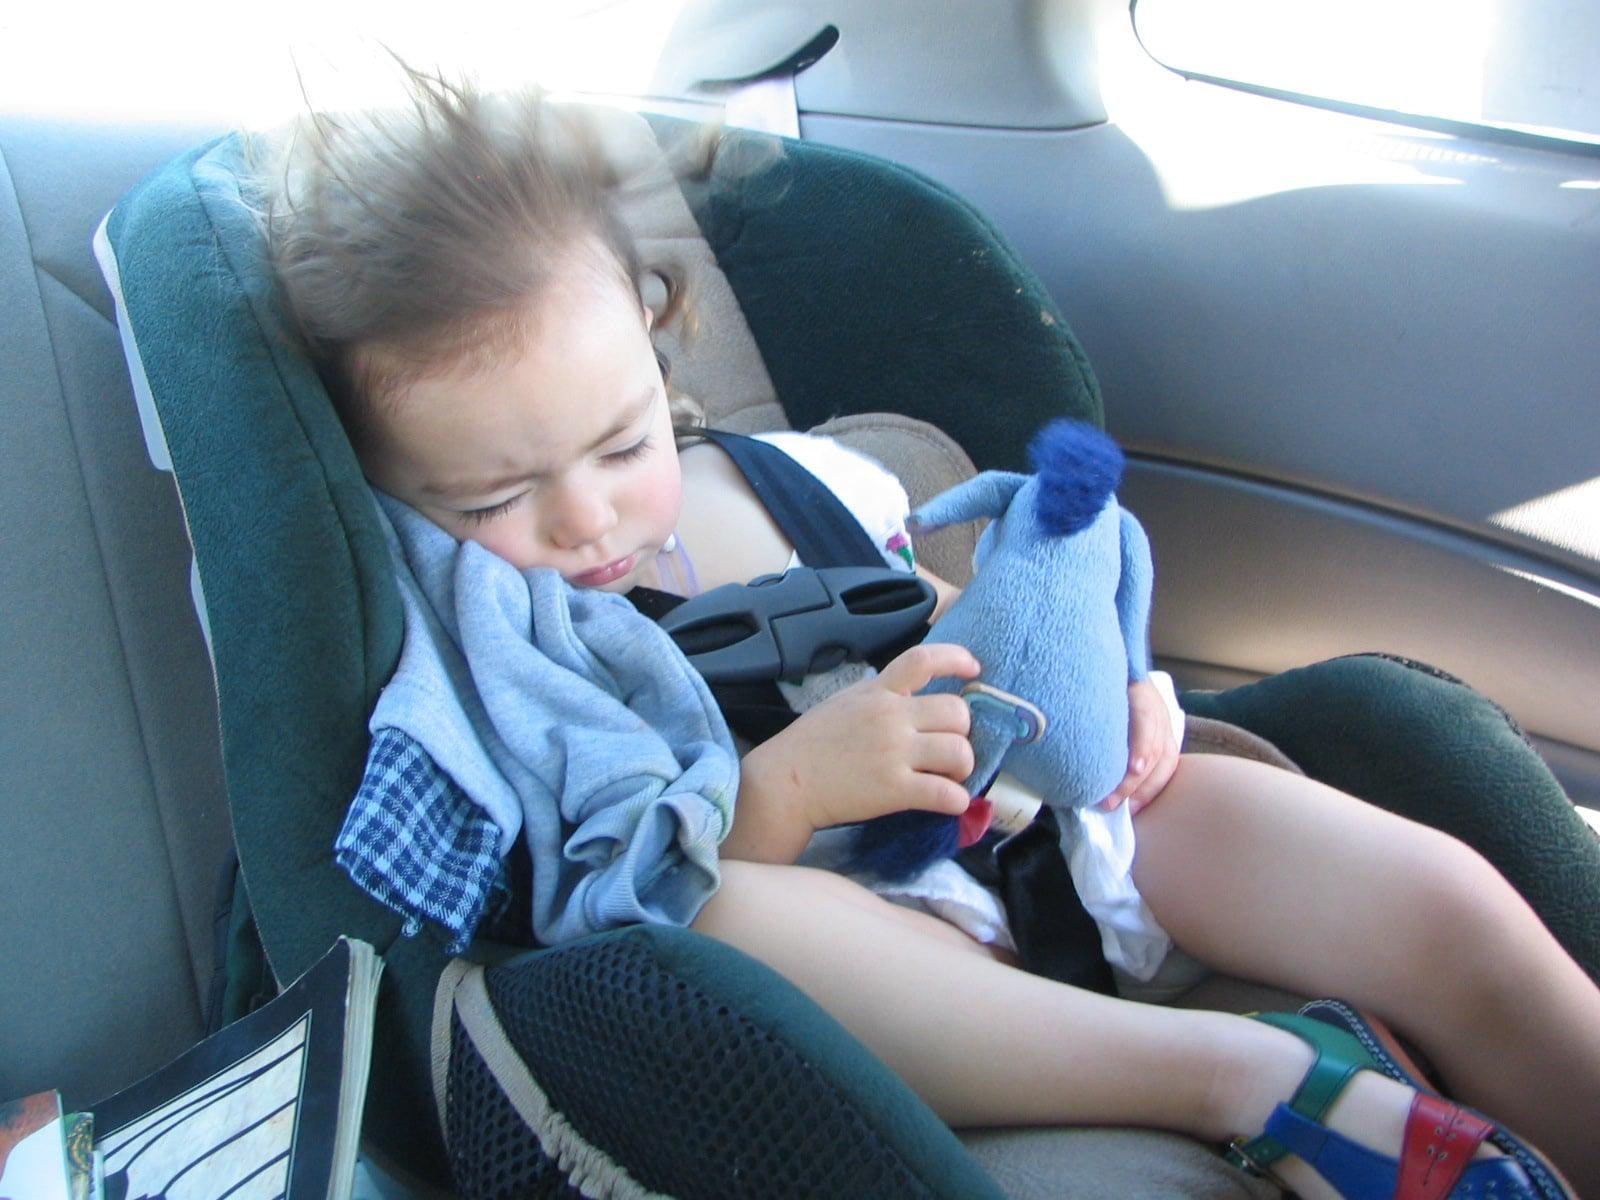 Nikada ne ostavljajte dijete samo u vozilu